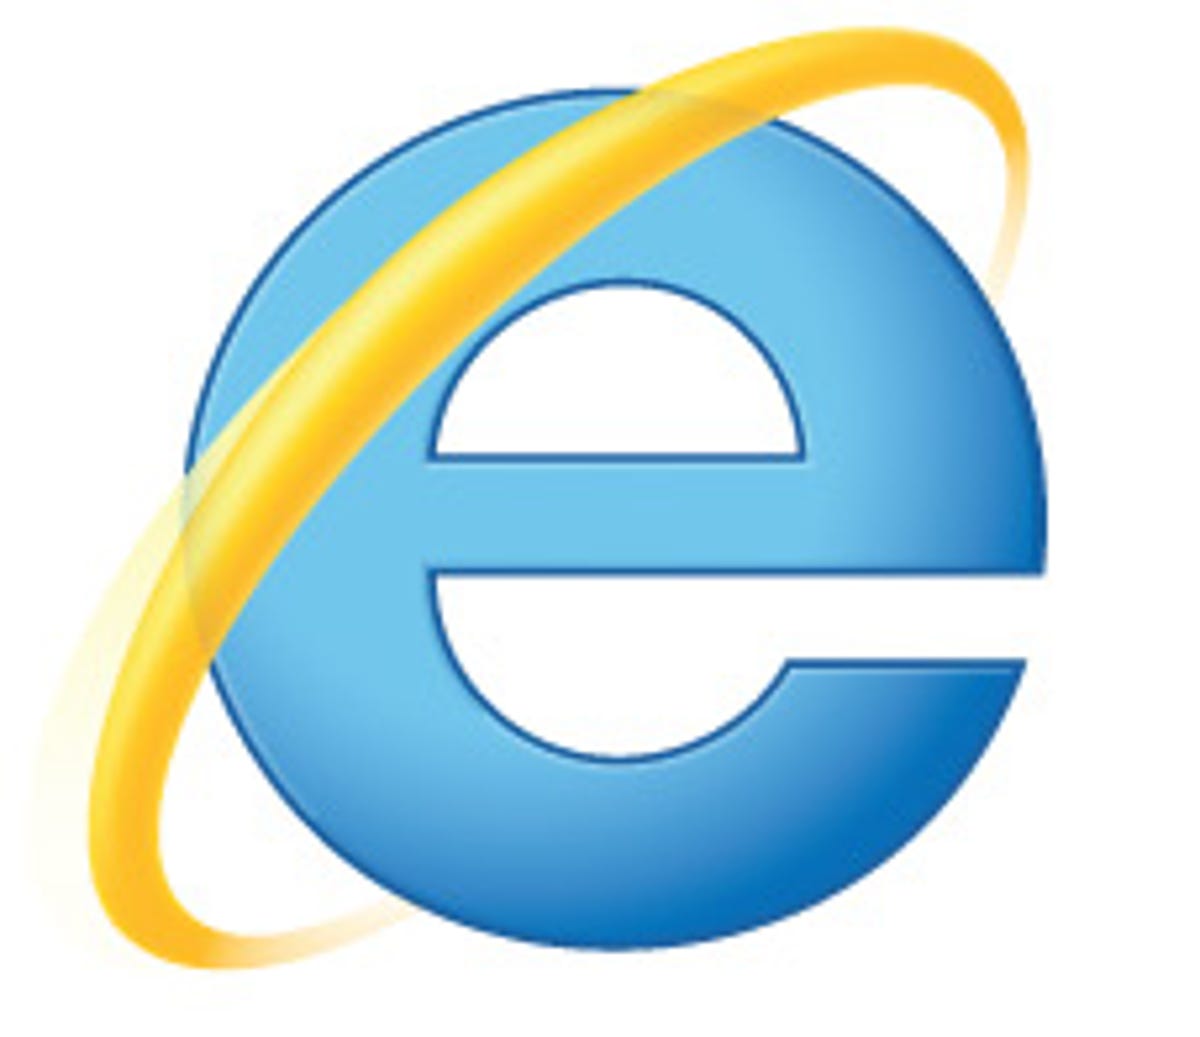 IE9 logo